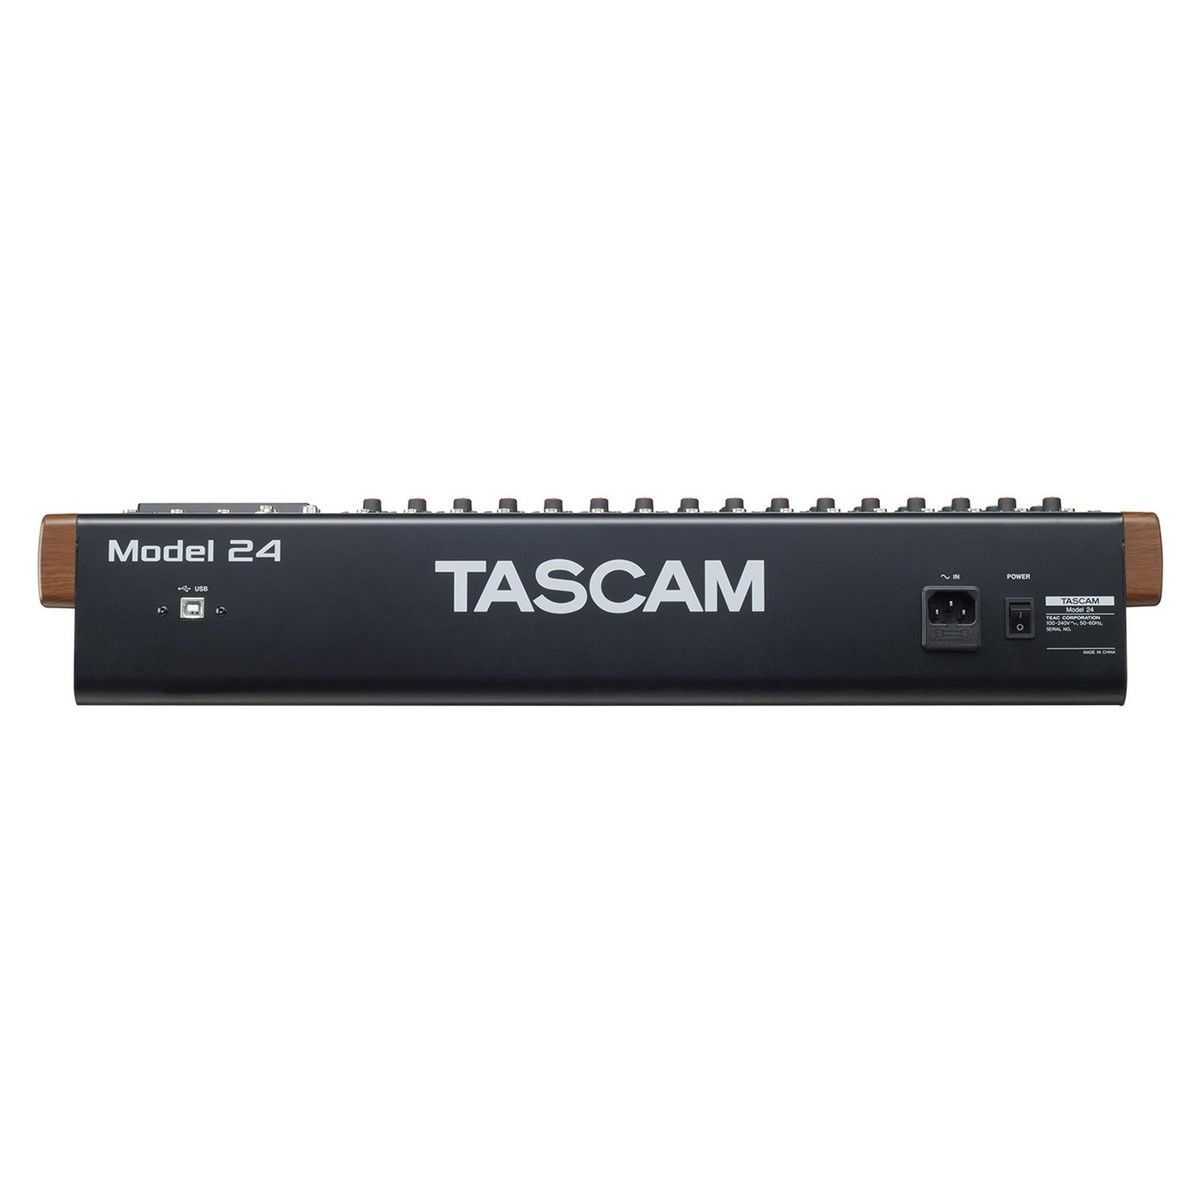 Аналоговый 22 канальный микшер TASCAM Model 24